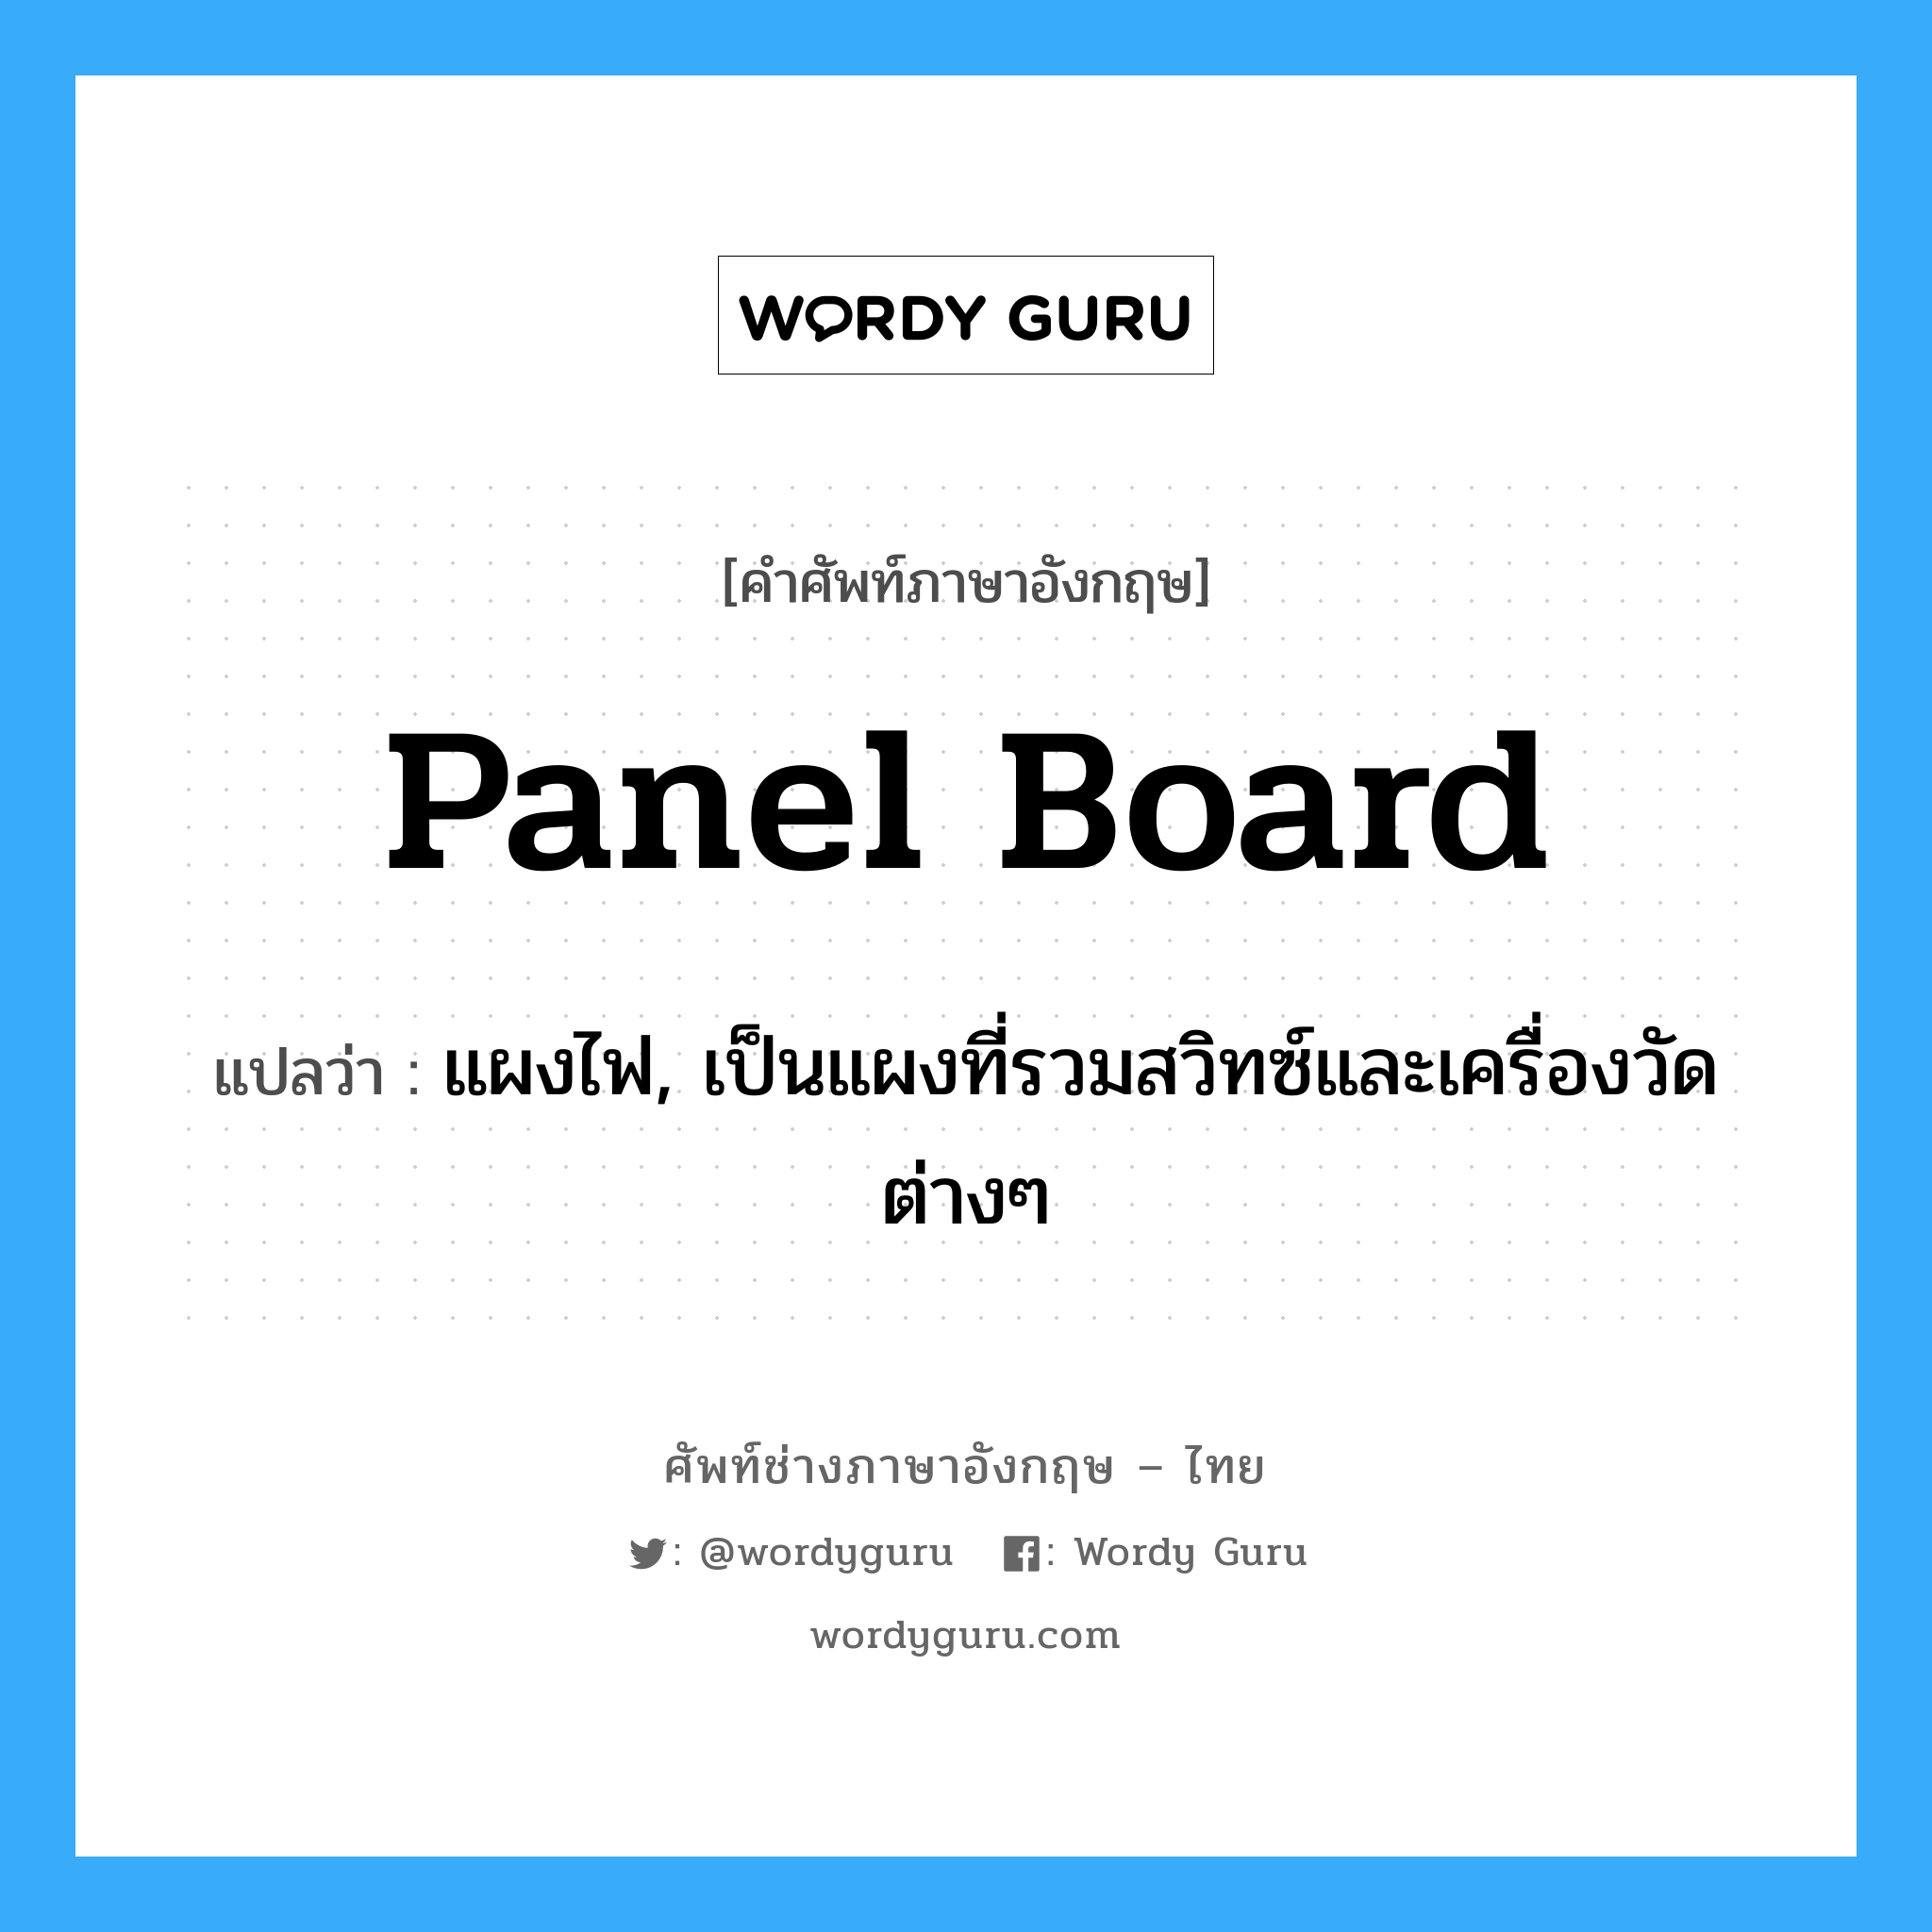 panel board แปลว่า?, คำศัพท์ช่างภาษาอังกฤษ - ไทย panel board คำศัพท์ภาษาอังกฤษ panel board แปลว่า แผงไฟ, เป็นแผงที่รวมสวิทซ์และเครื่องวัดต่างๆ